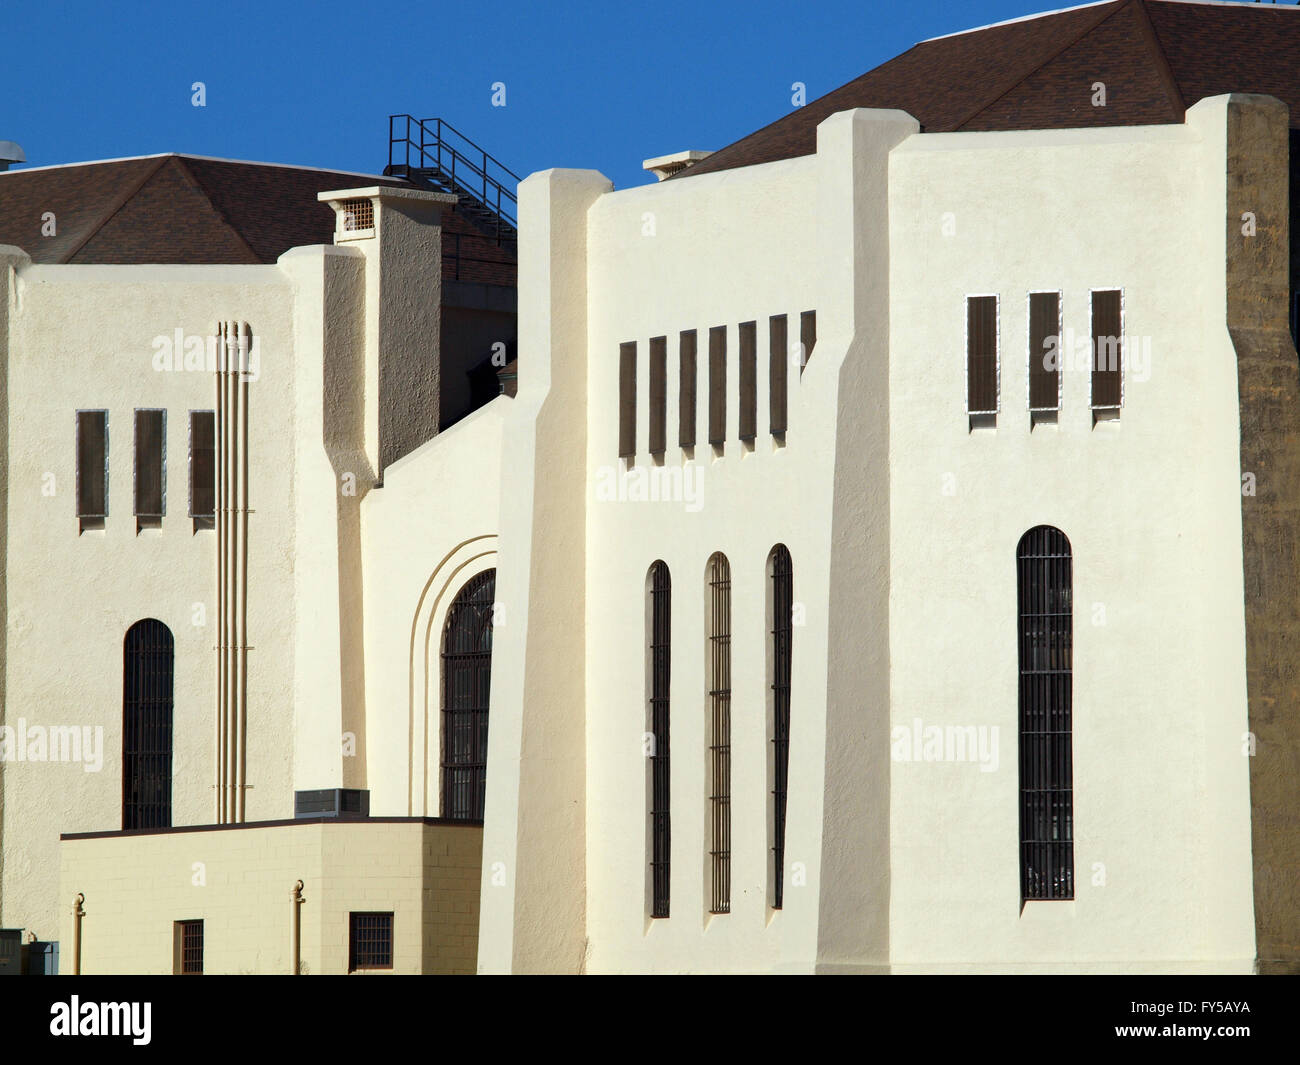 San Quintín prisión estatal cerca de la prisión de pared exterior, ventanas con bares, y el techo. Foto de stock